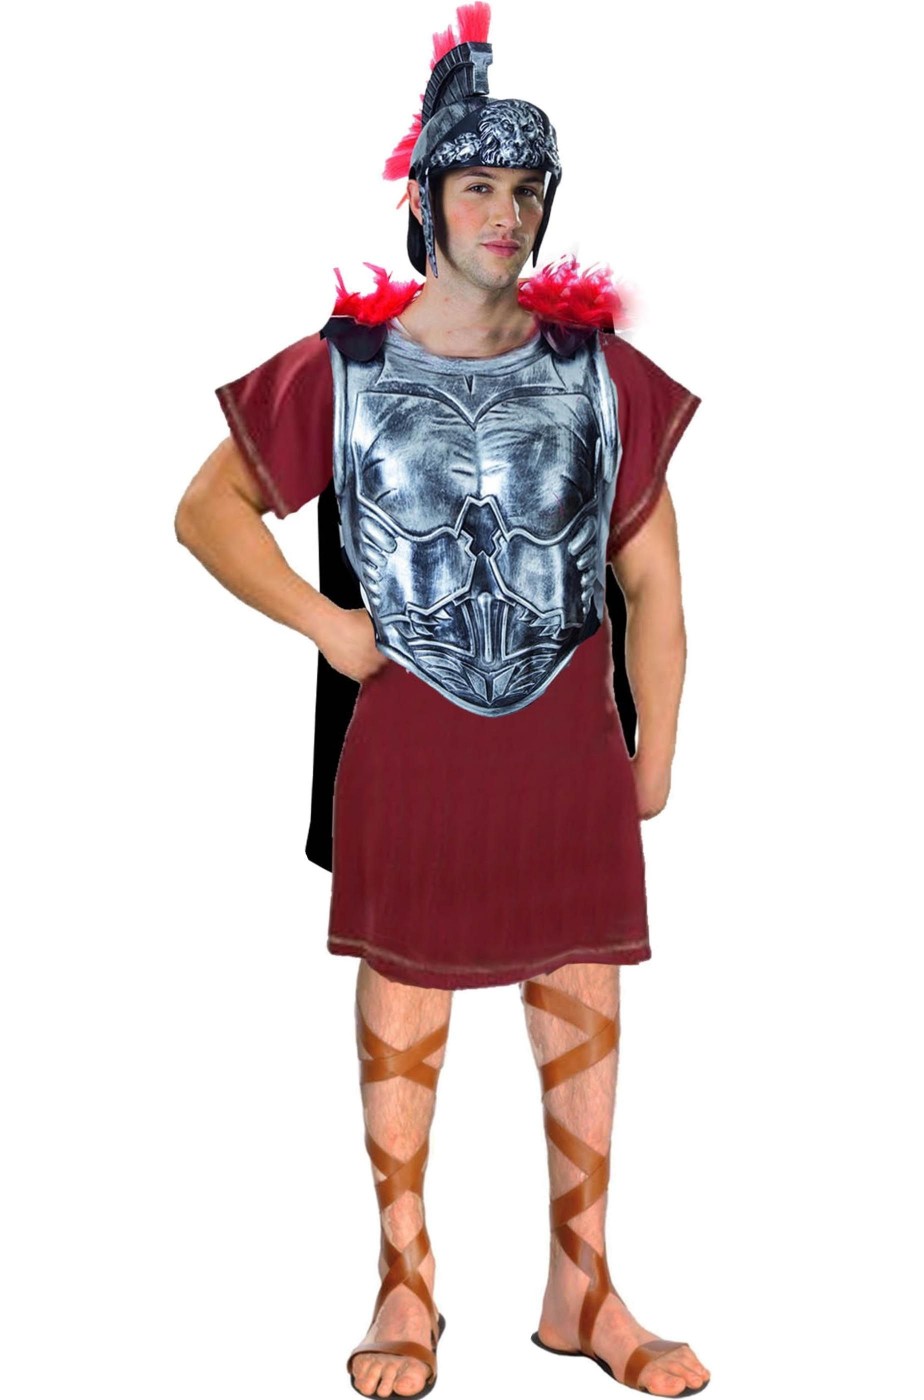 Costume antico romano completo con armatura color ferro